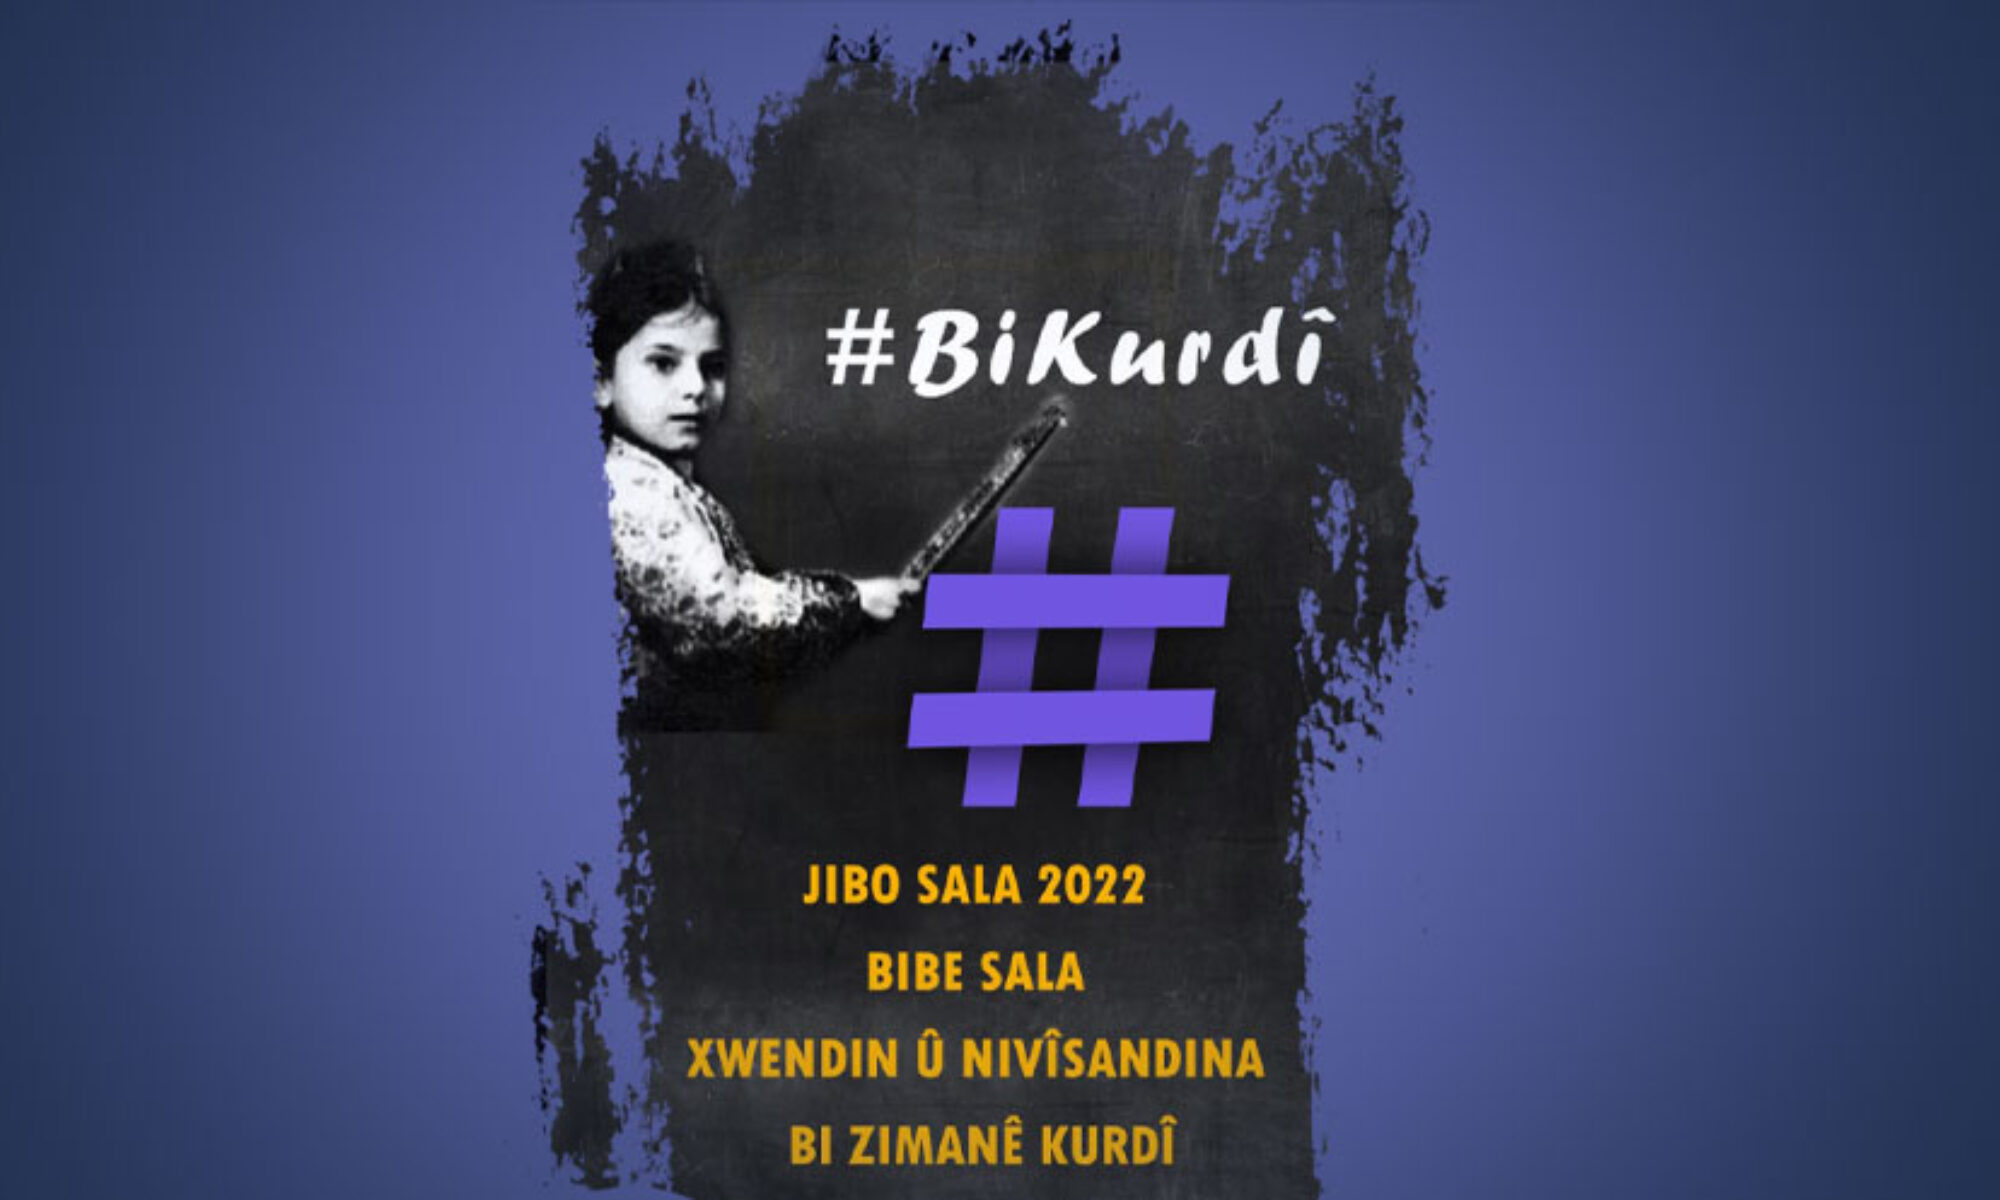 Rojava Kürdistanlı aktivistler #Bikurdî hastagı ile kampanya başlattı